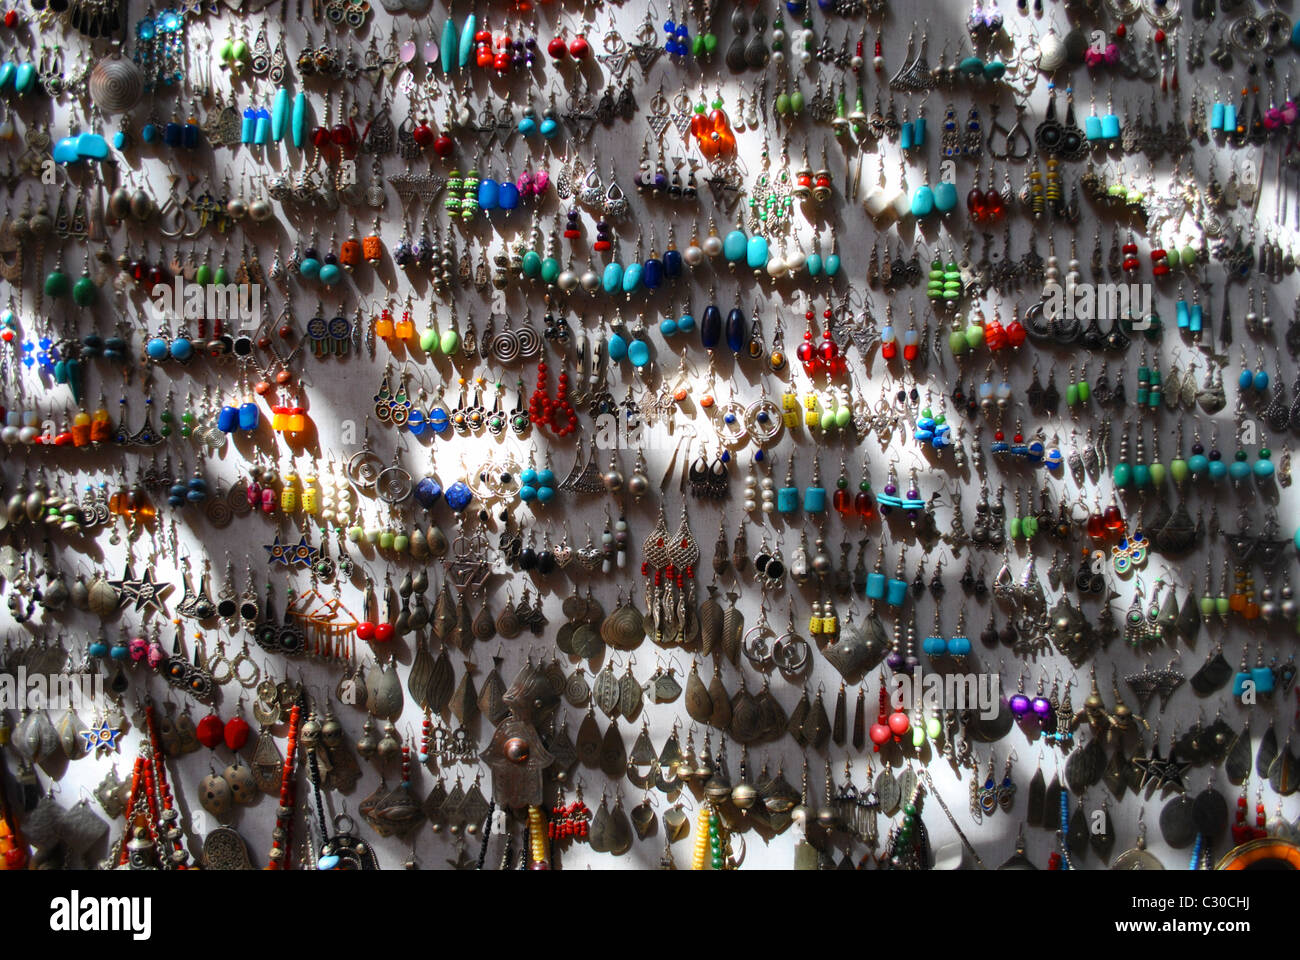 Earrings in a souk in Marrakesh, Morocco Stock Photo